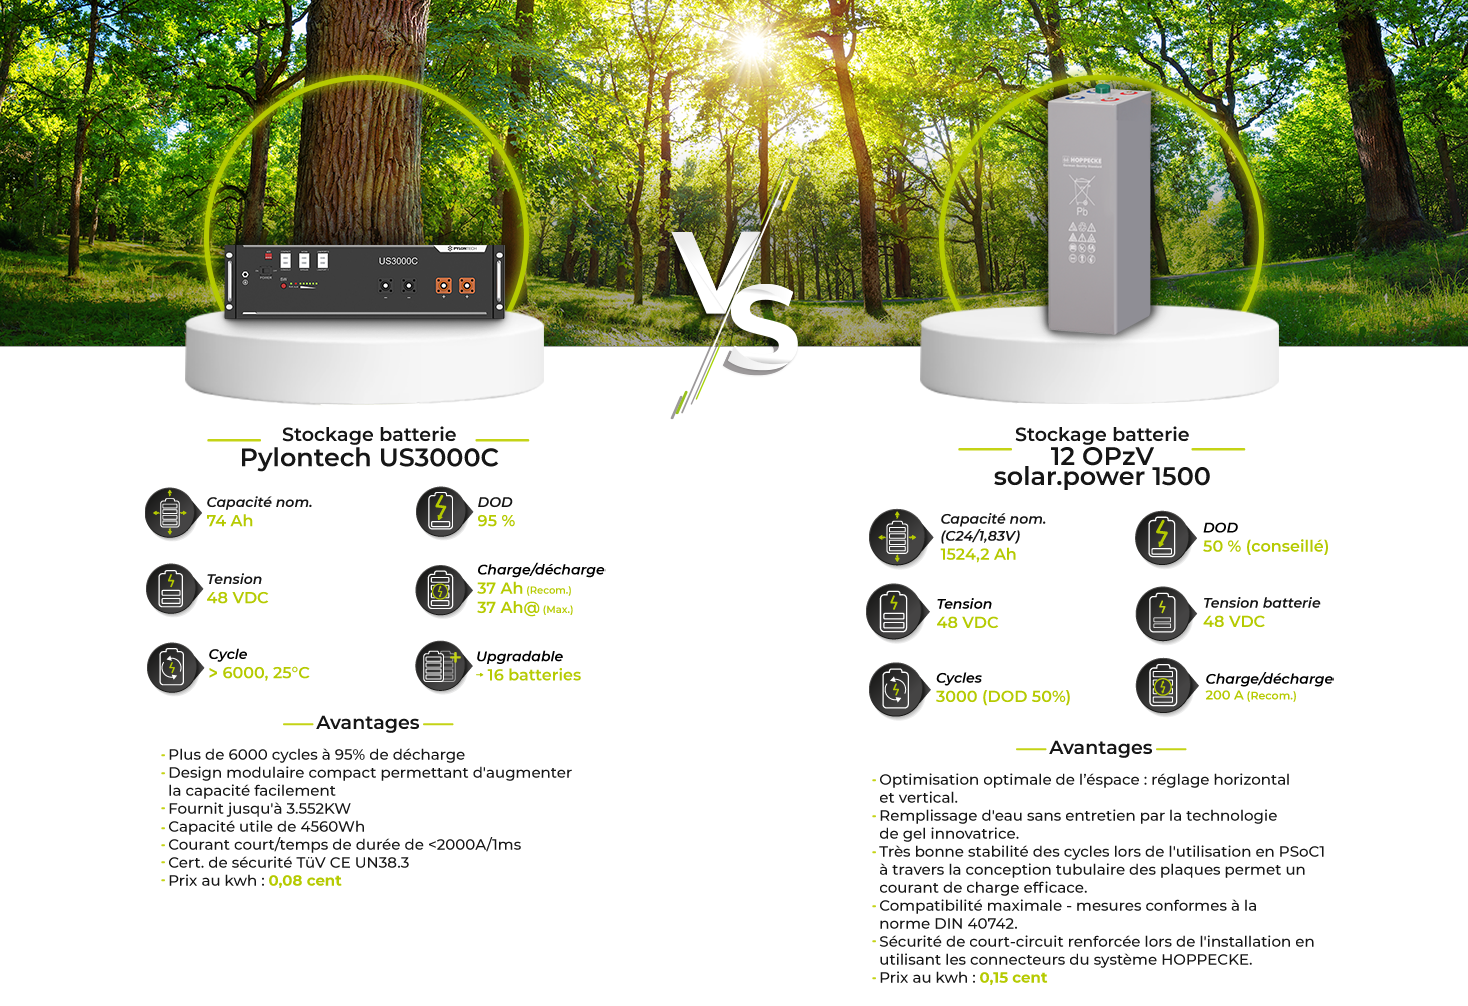 Comparaison-batteries-pylontech-opzv-FR.png